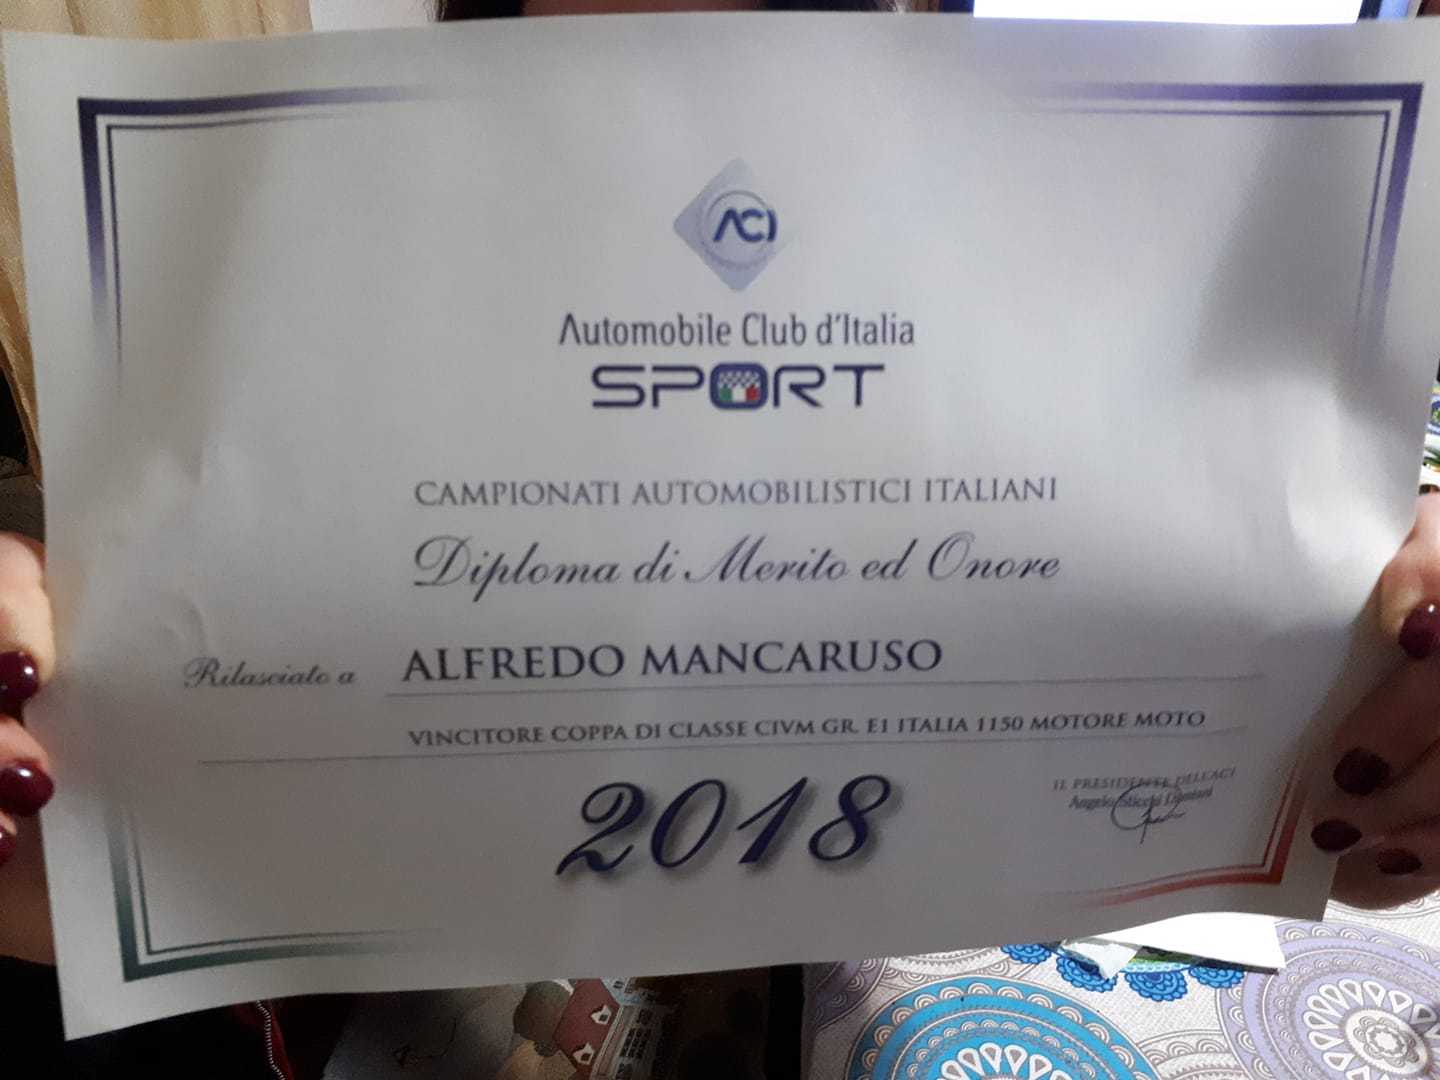 AciSport premia il Pilota Alfredo Mancaruso. Professionalità e passione per lo Sport